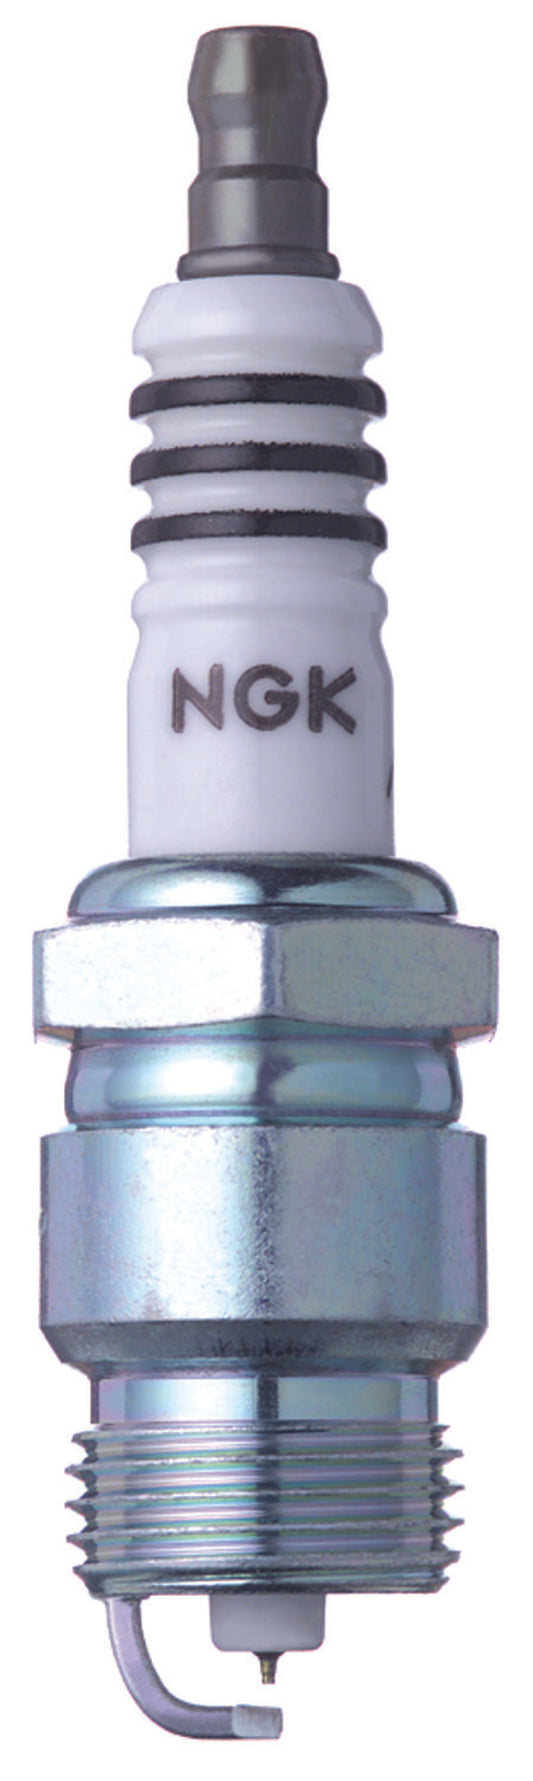 NGK Iridium IX Spark Plug Box of 4 (WR5IX)